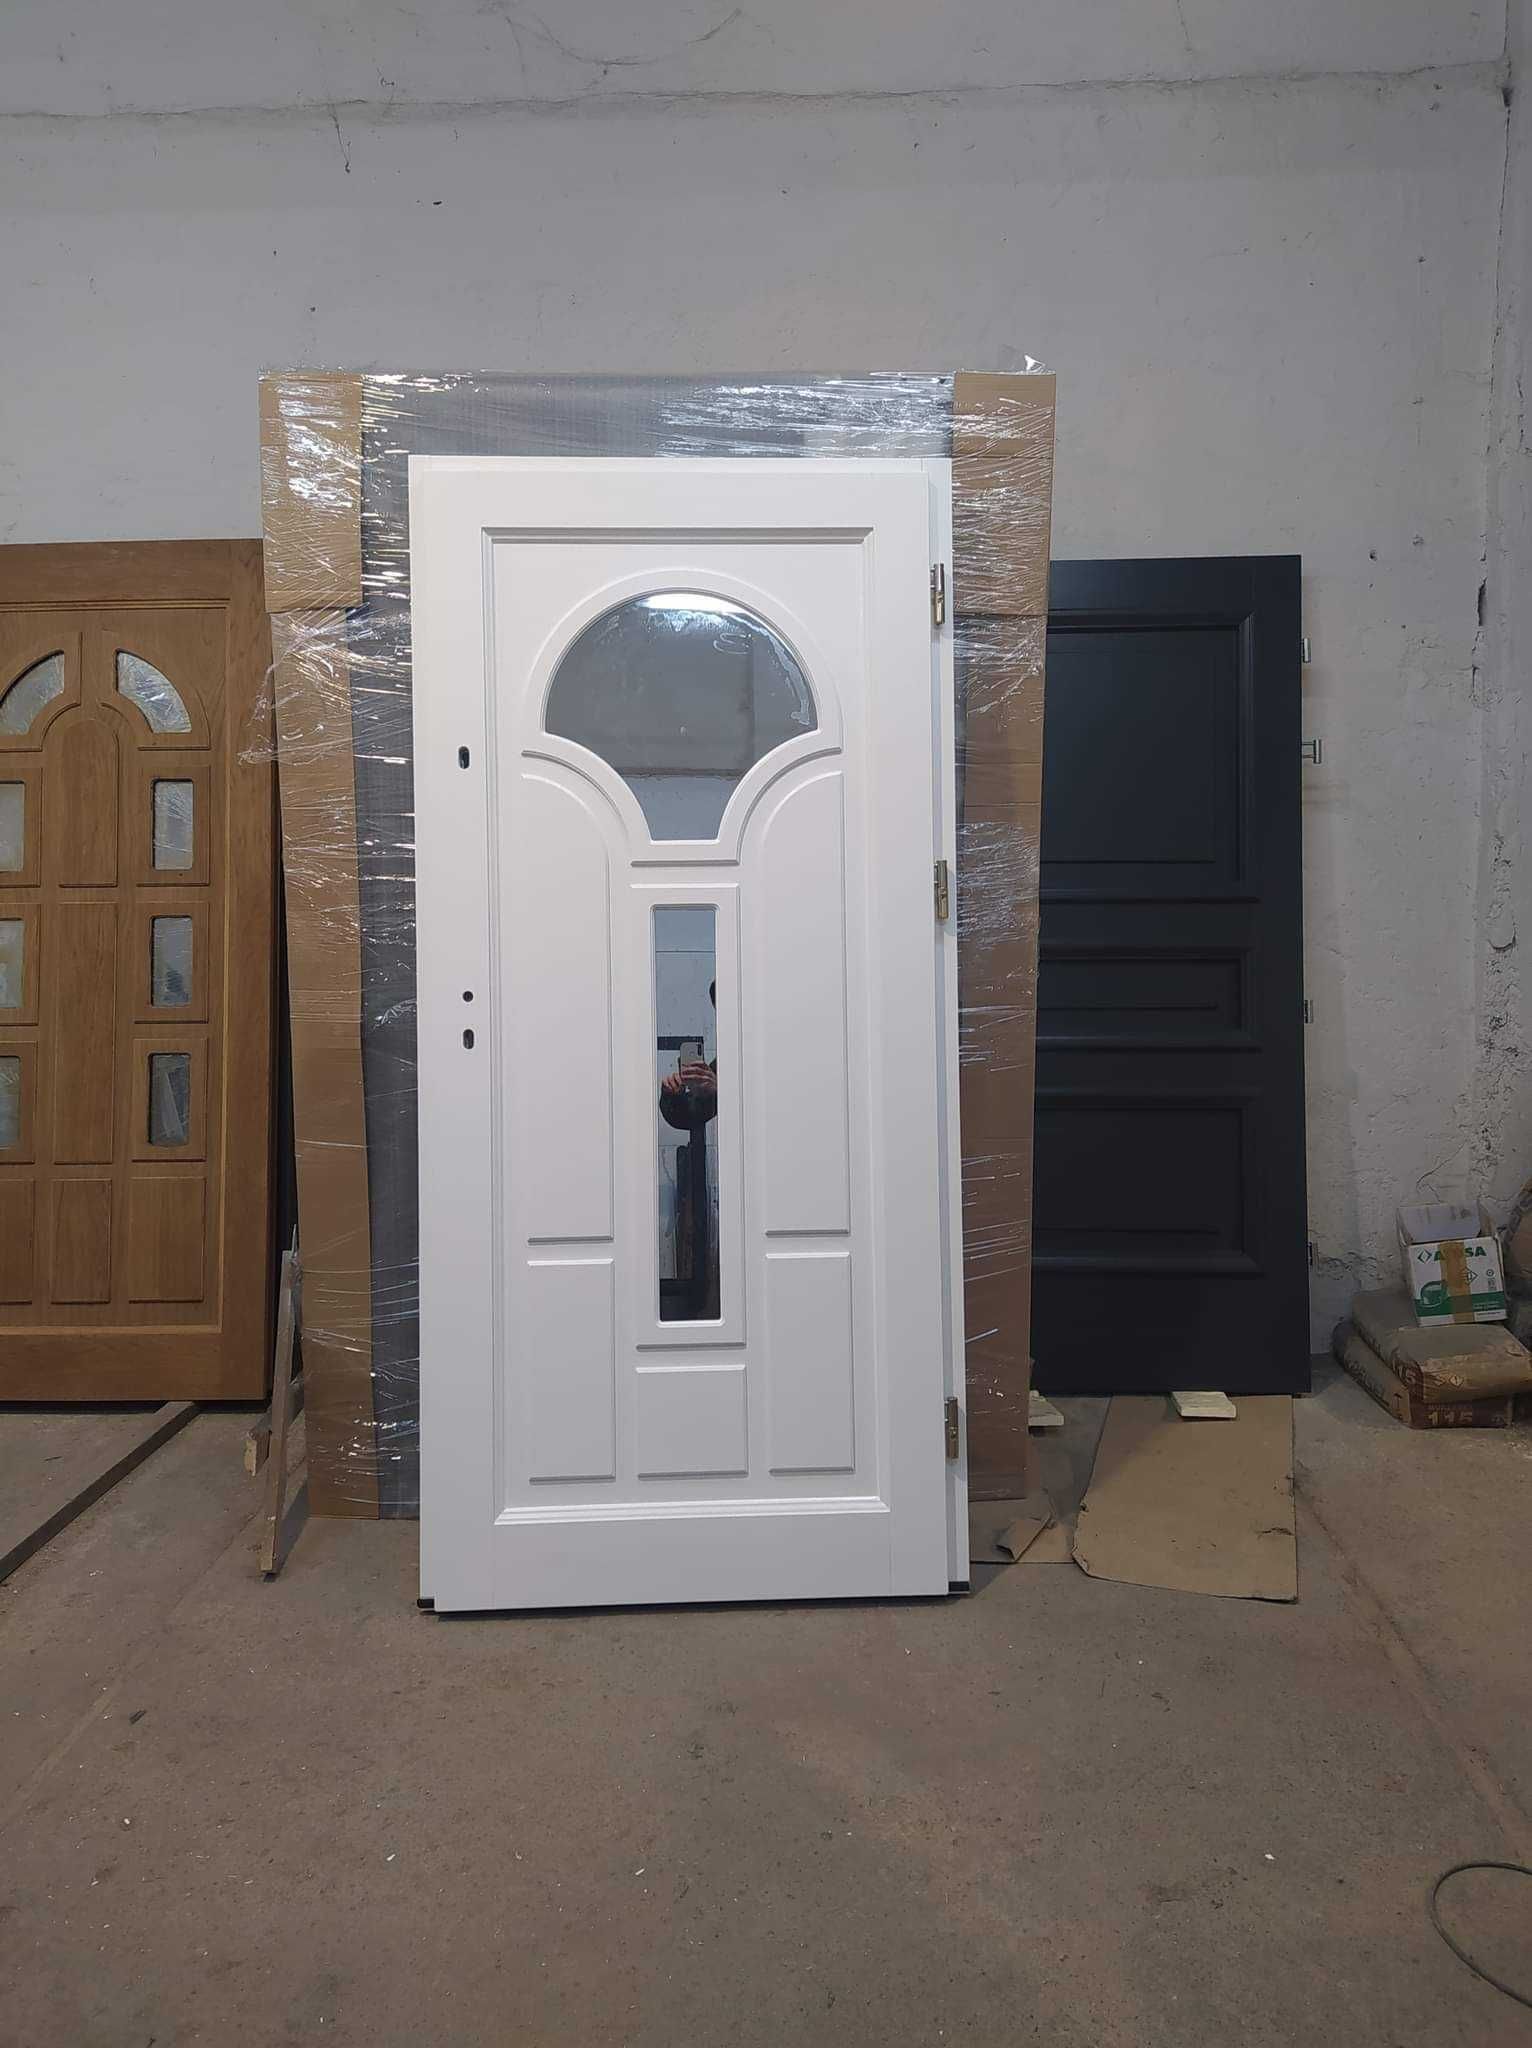 Drzwi  zewnętrzne drewniane dębowe dostawa GRATIS CZYSTE POWIETRZE